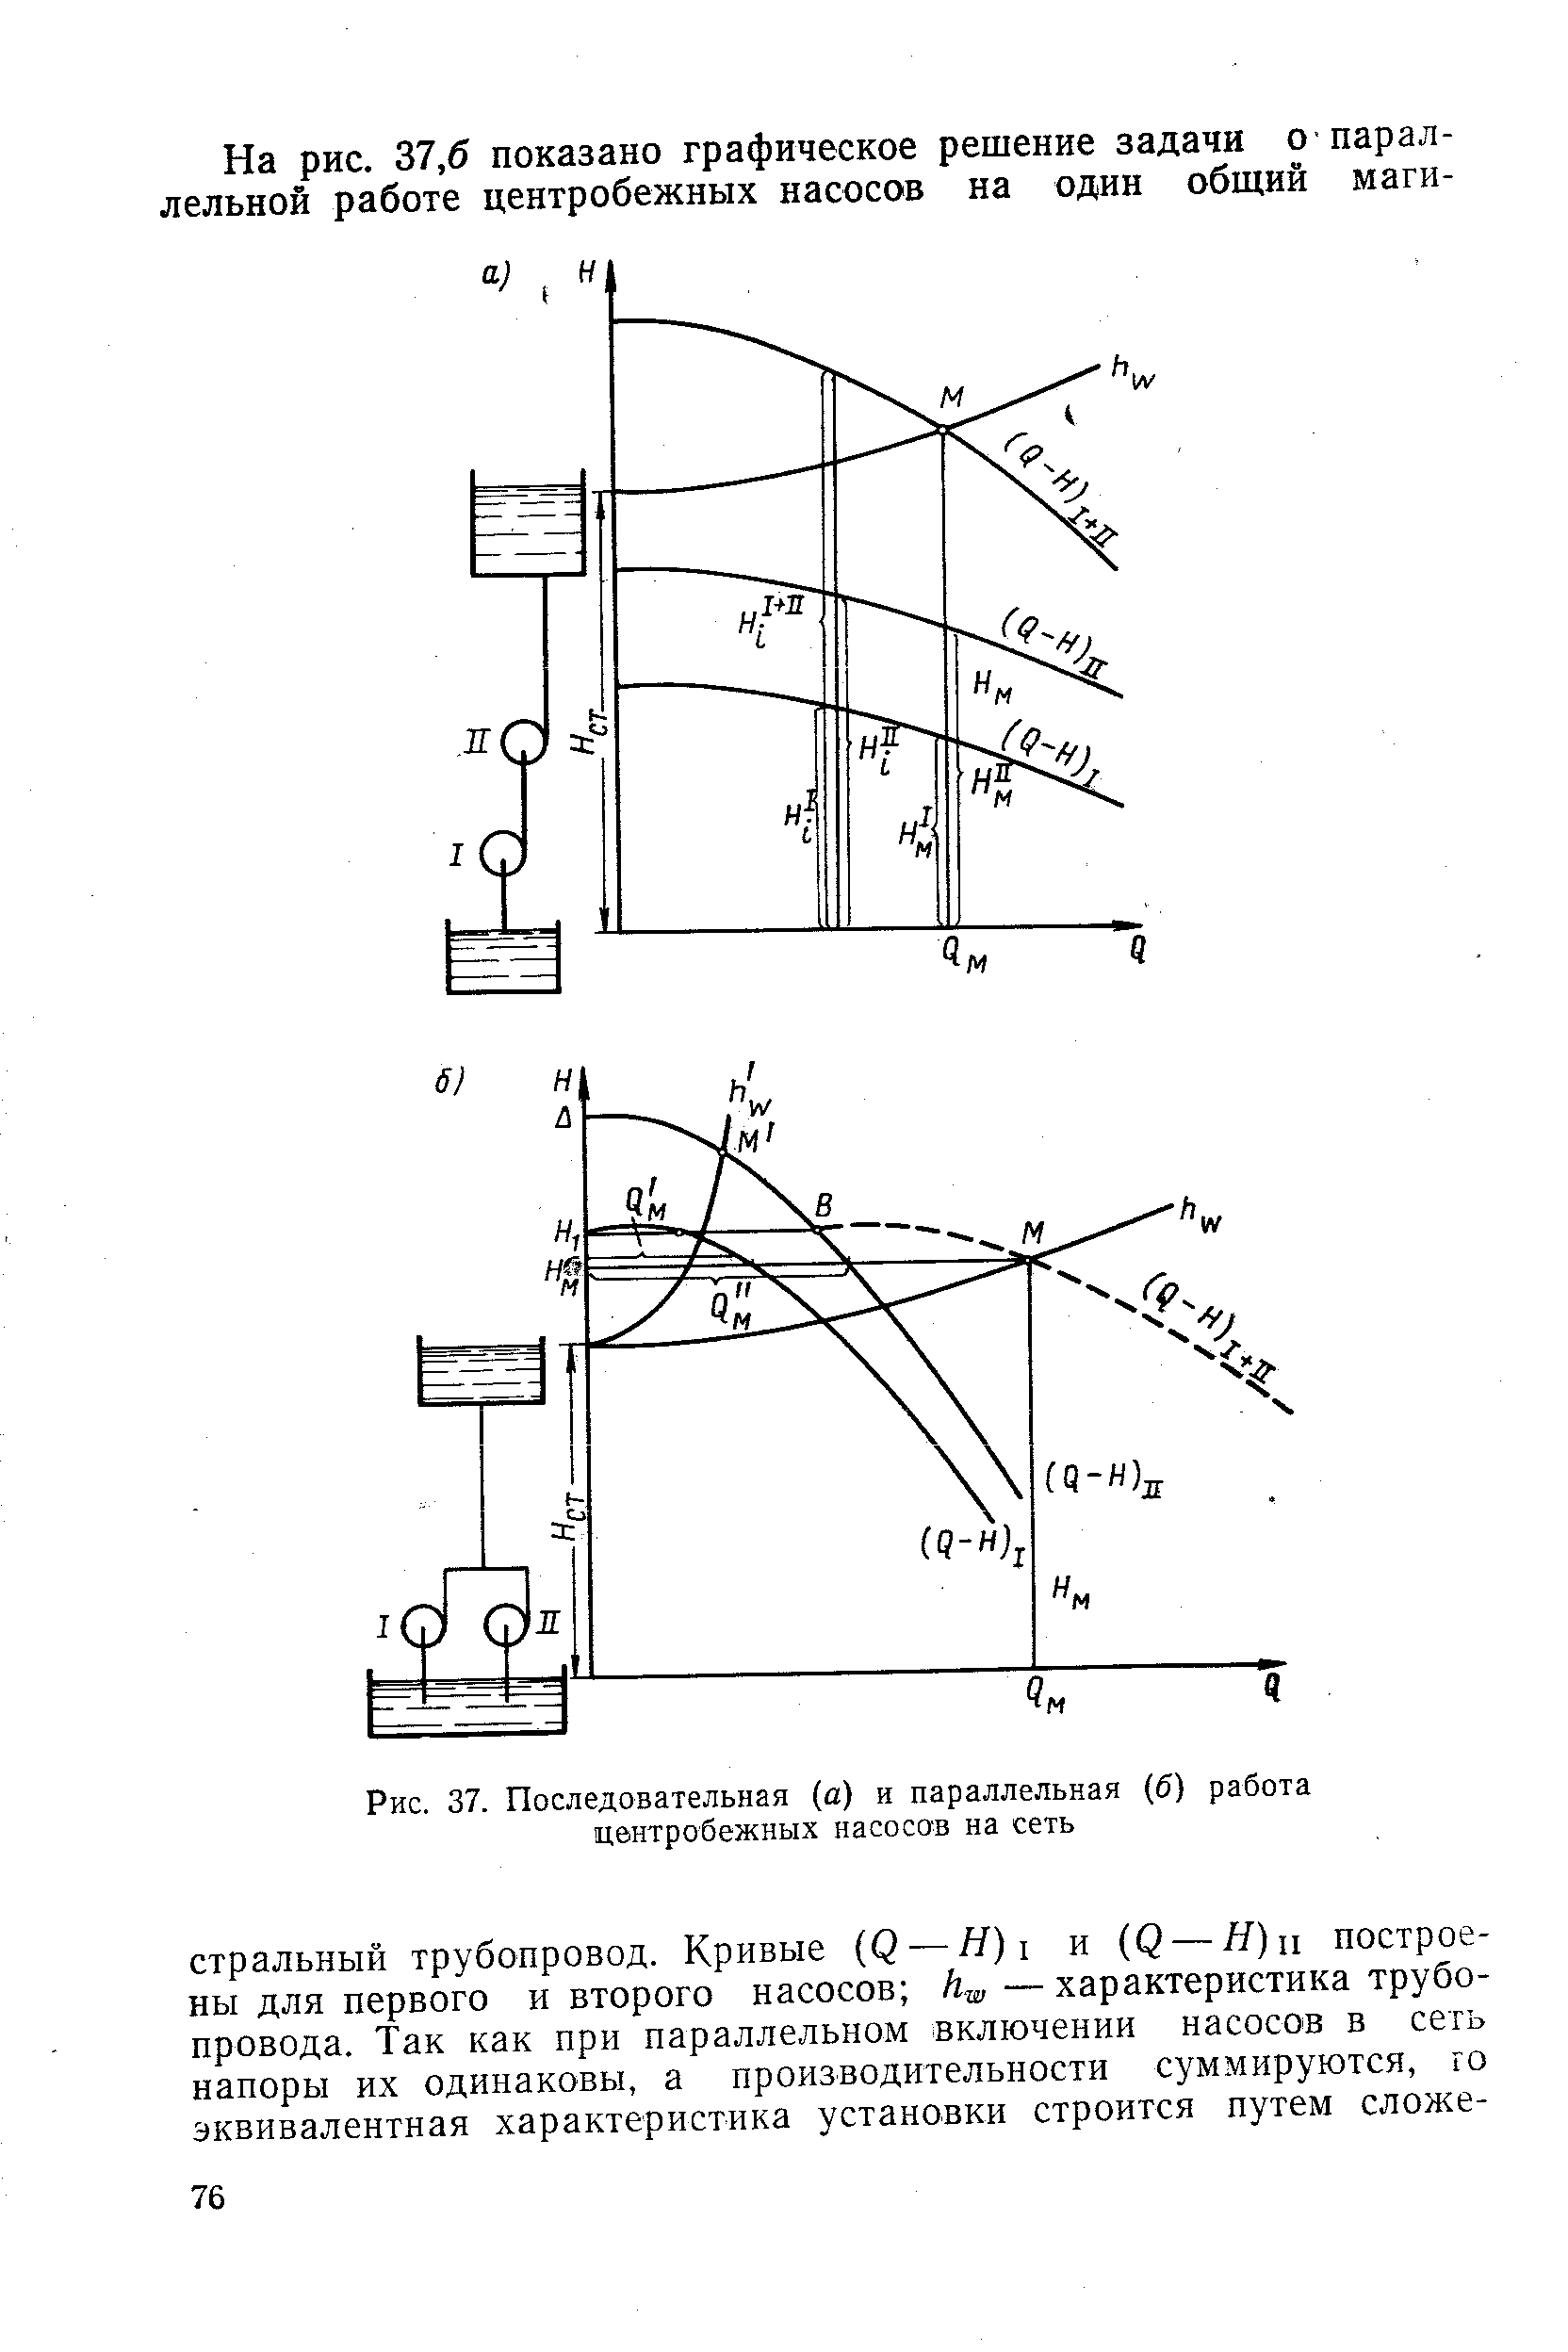 Рис. 37. Последовательная (а) и параллельная (б) работа <a href="/info/27481">центробежных насосов</a> на сеть
